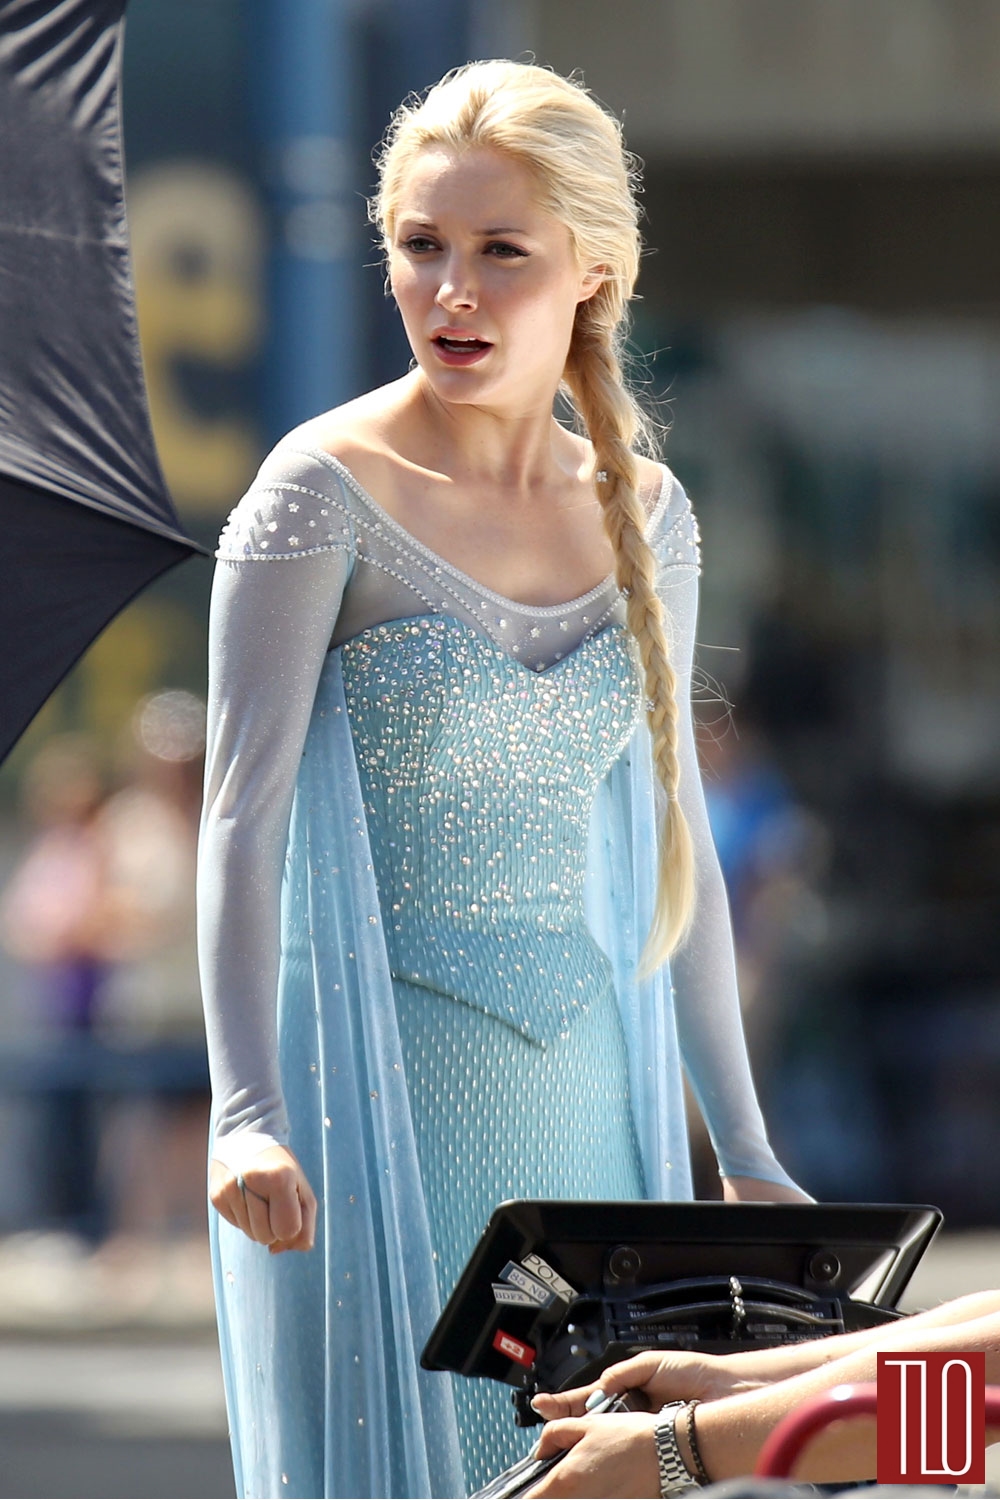 Georgina-Haig-Princess-Elsa-Frozen-Once-Upon-A-Time-TV-Show-Set-Tom-Lorenzo-Site-TLO-6.jpg